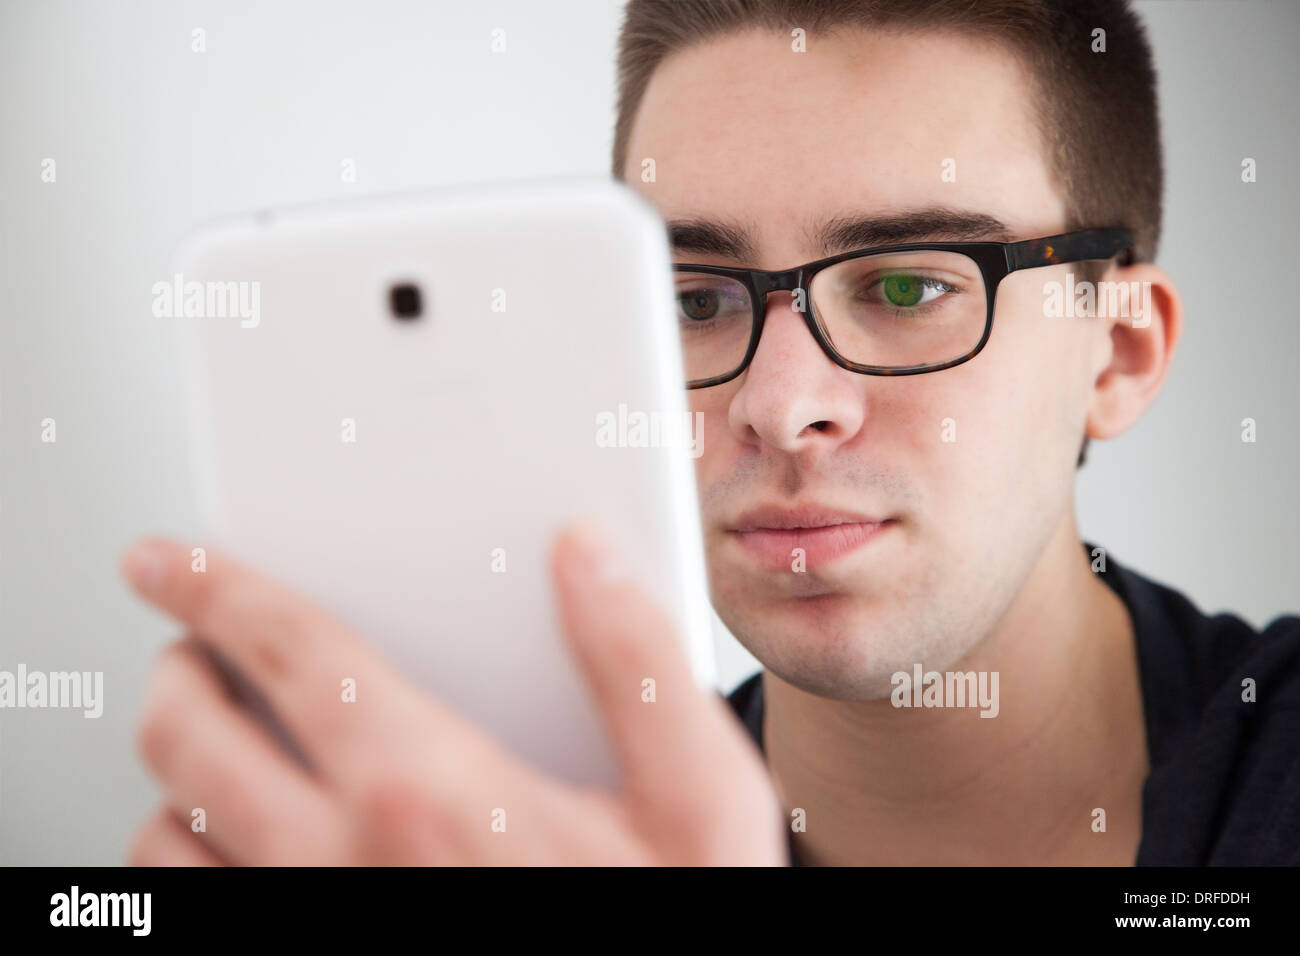 Buona ricerca giovane con gli occhiali, tenendo in mano un bianco digitale compressa. Espressione seria. Foto Stock